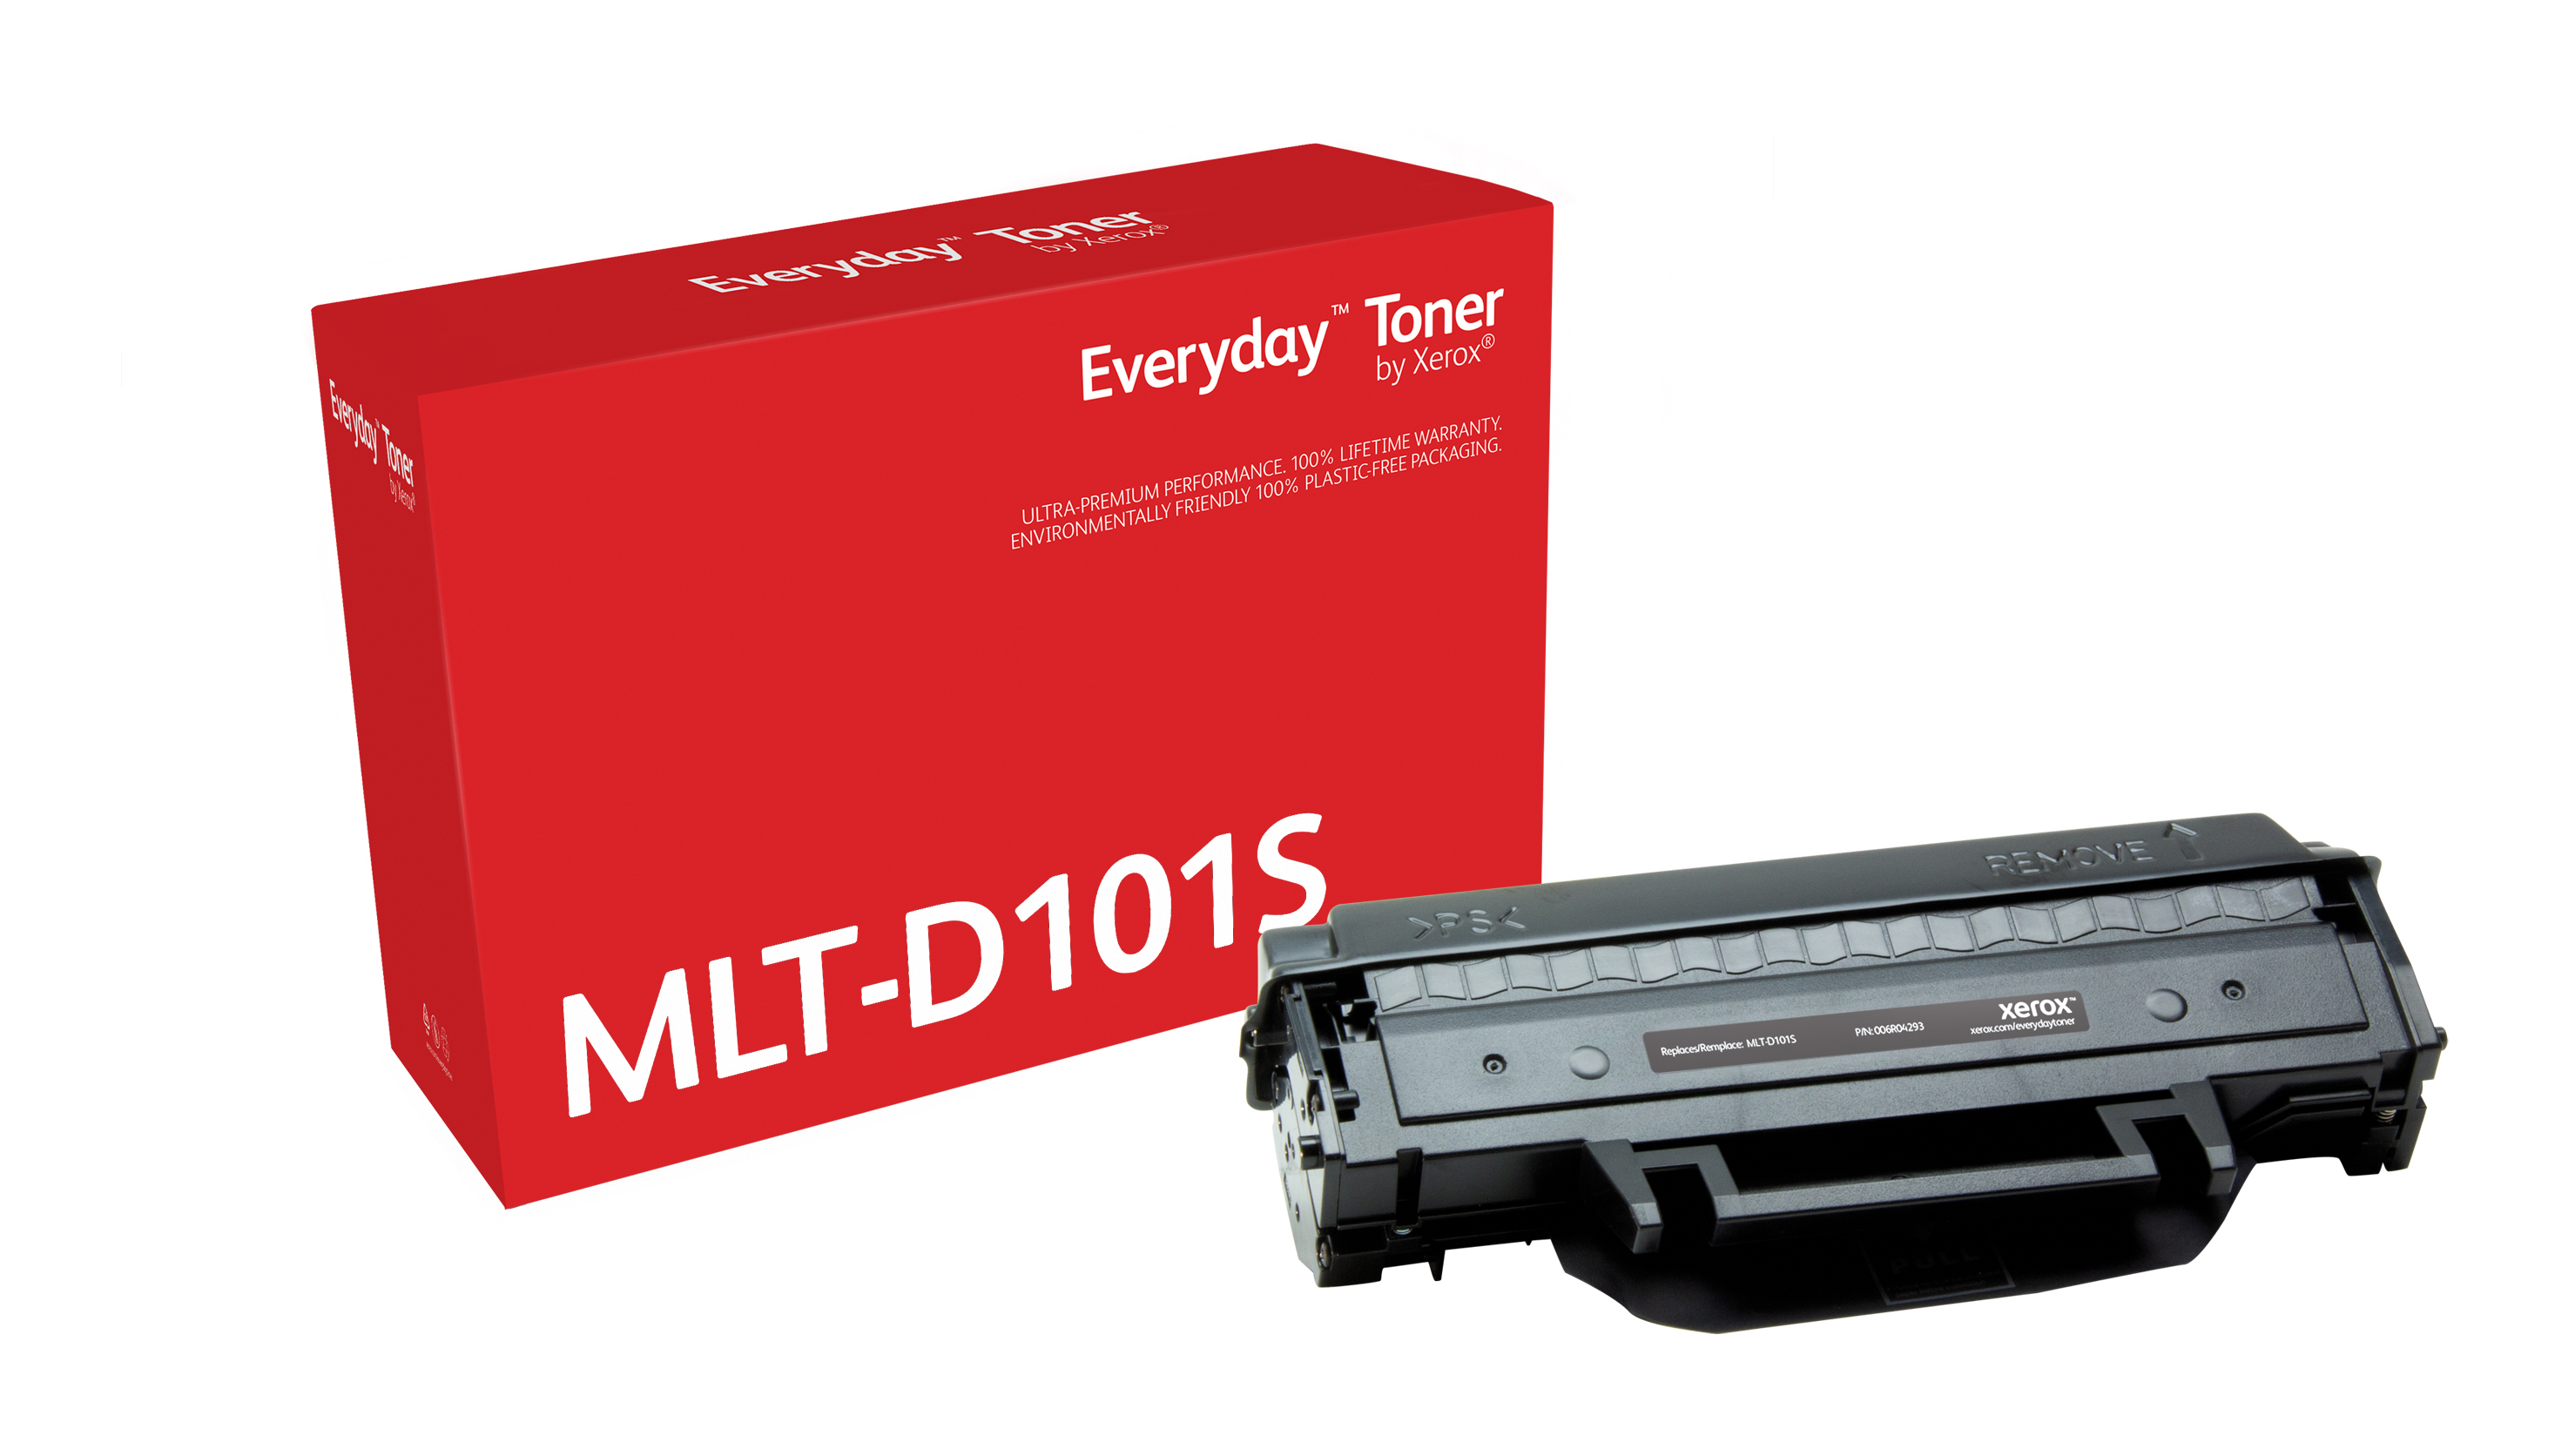 Tóner Everyday Negro compatible con Samsung MLT-D101S, Rendimiento estándar  006R04293 by Xerox